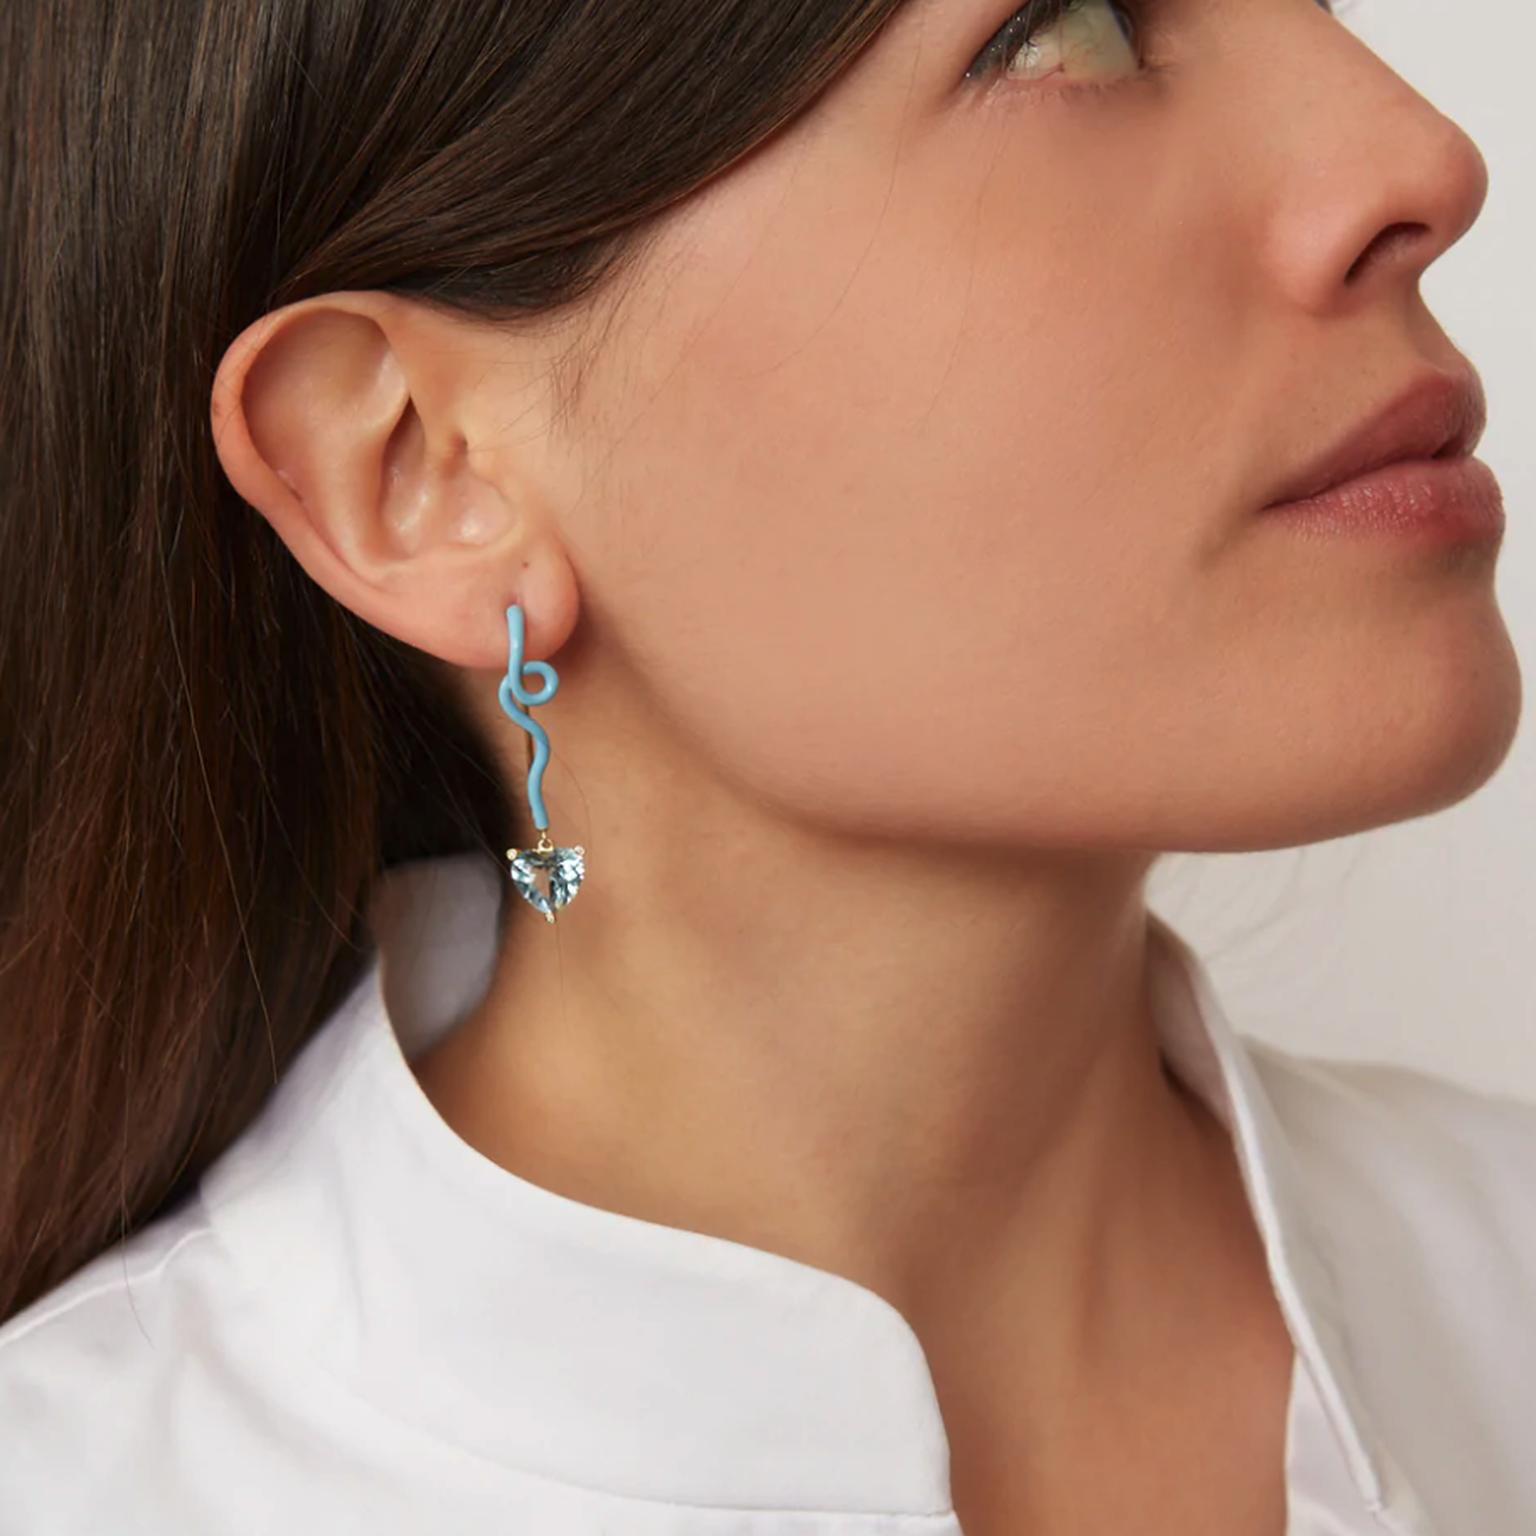 Gwen earrings by Bea Bongiasca on model